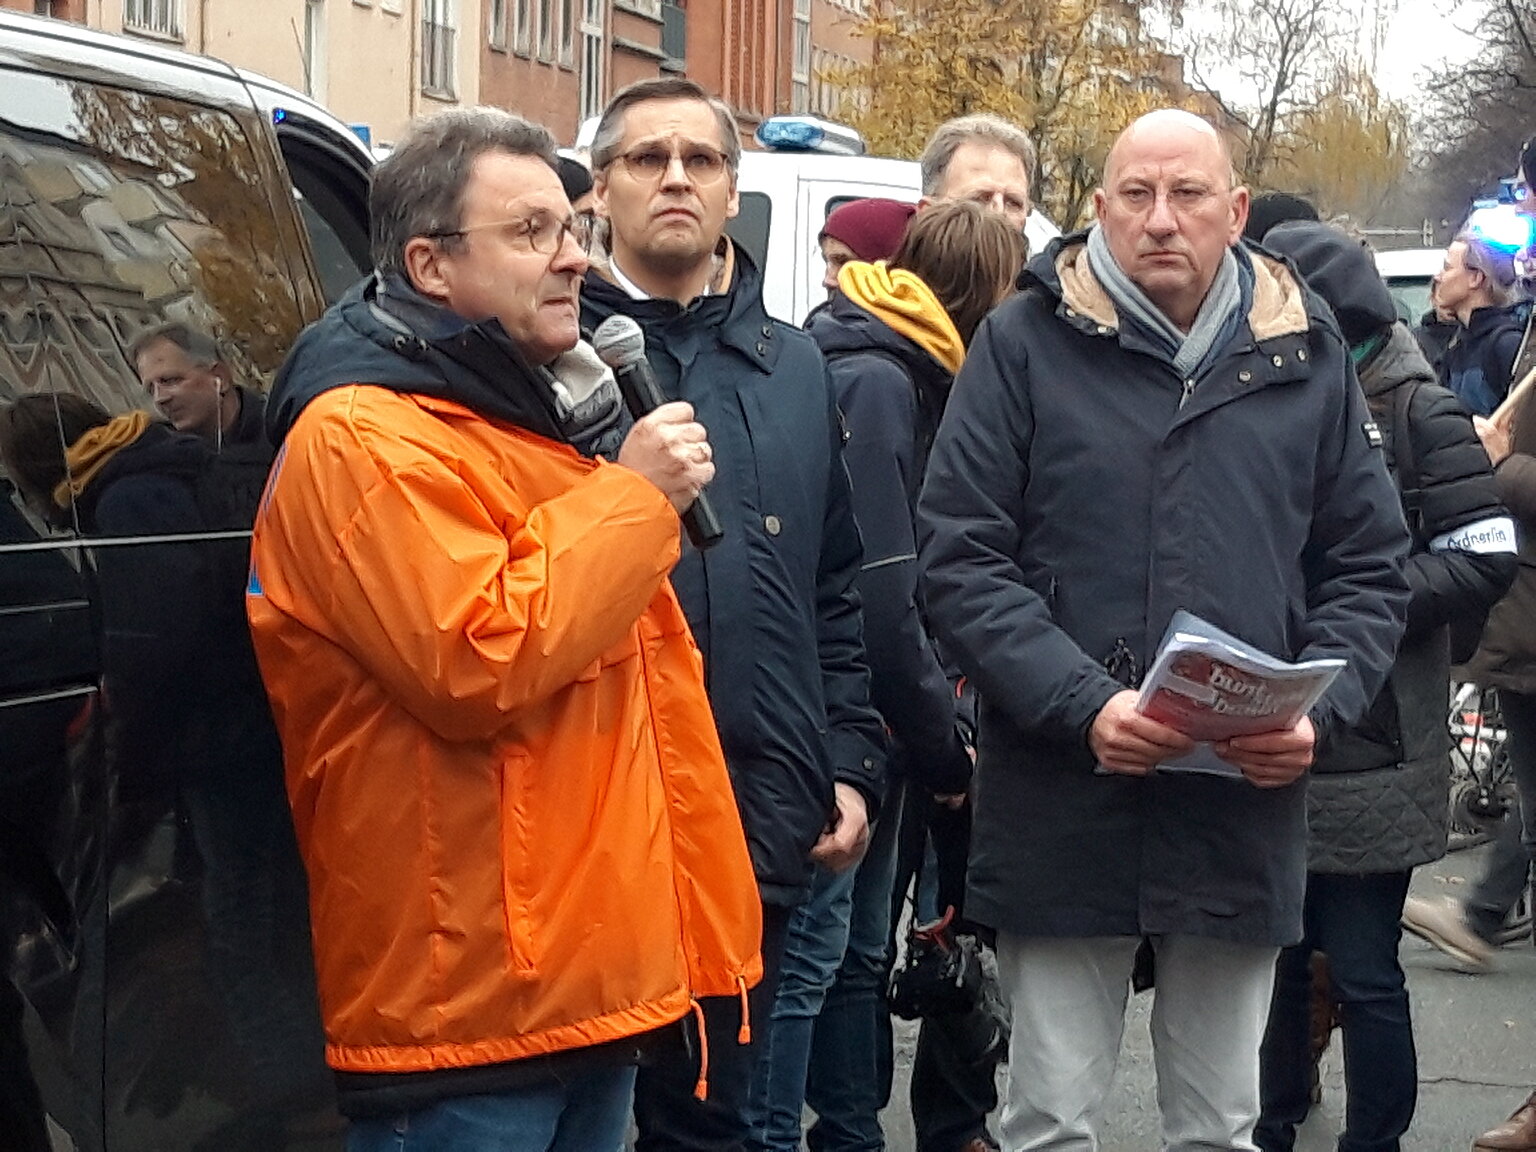  – Der Vorsitzende des DJV-Niedersachsen, Frank Rieger, spricht auf einer Gegendemonstration in Hannover. Foto: Christiane Eickmann